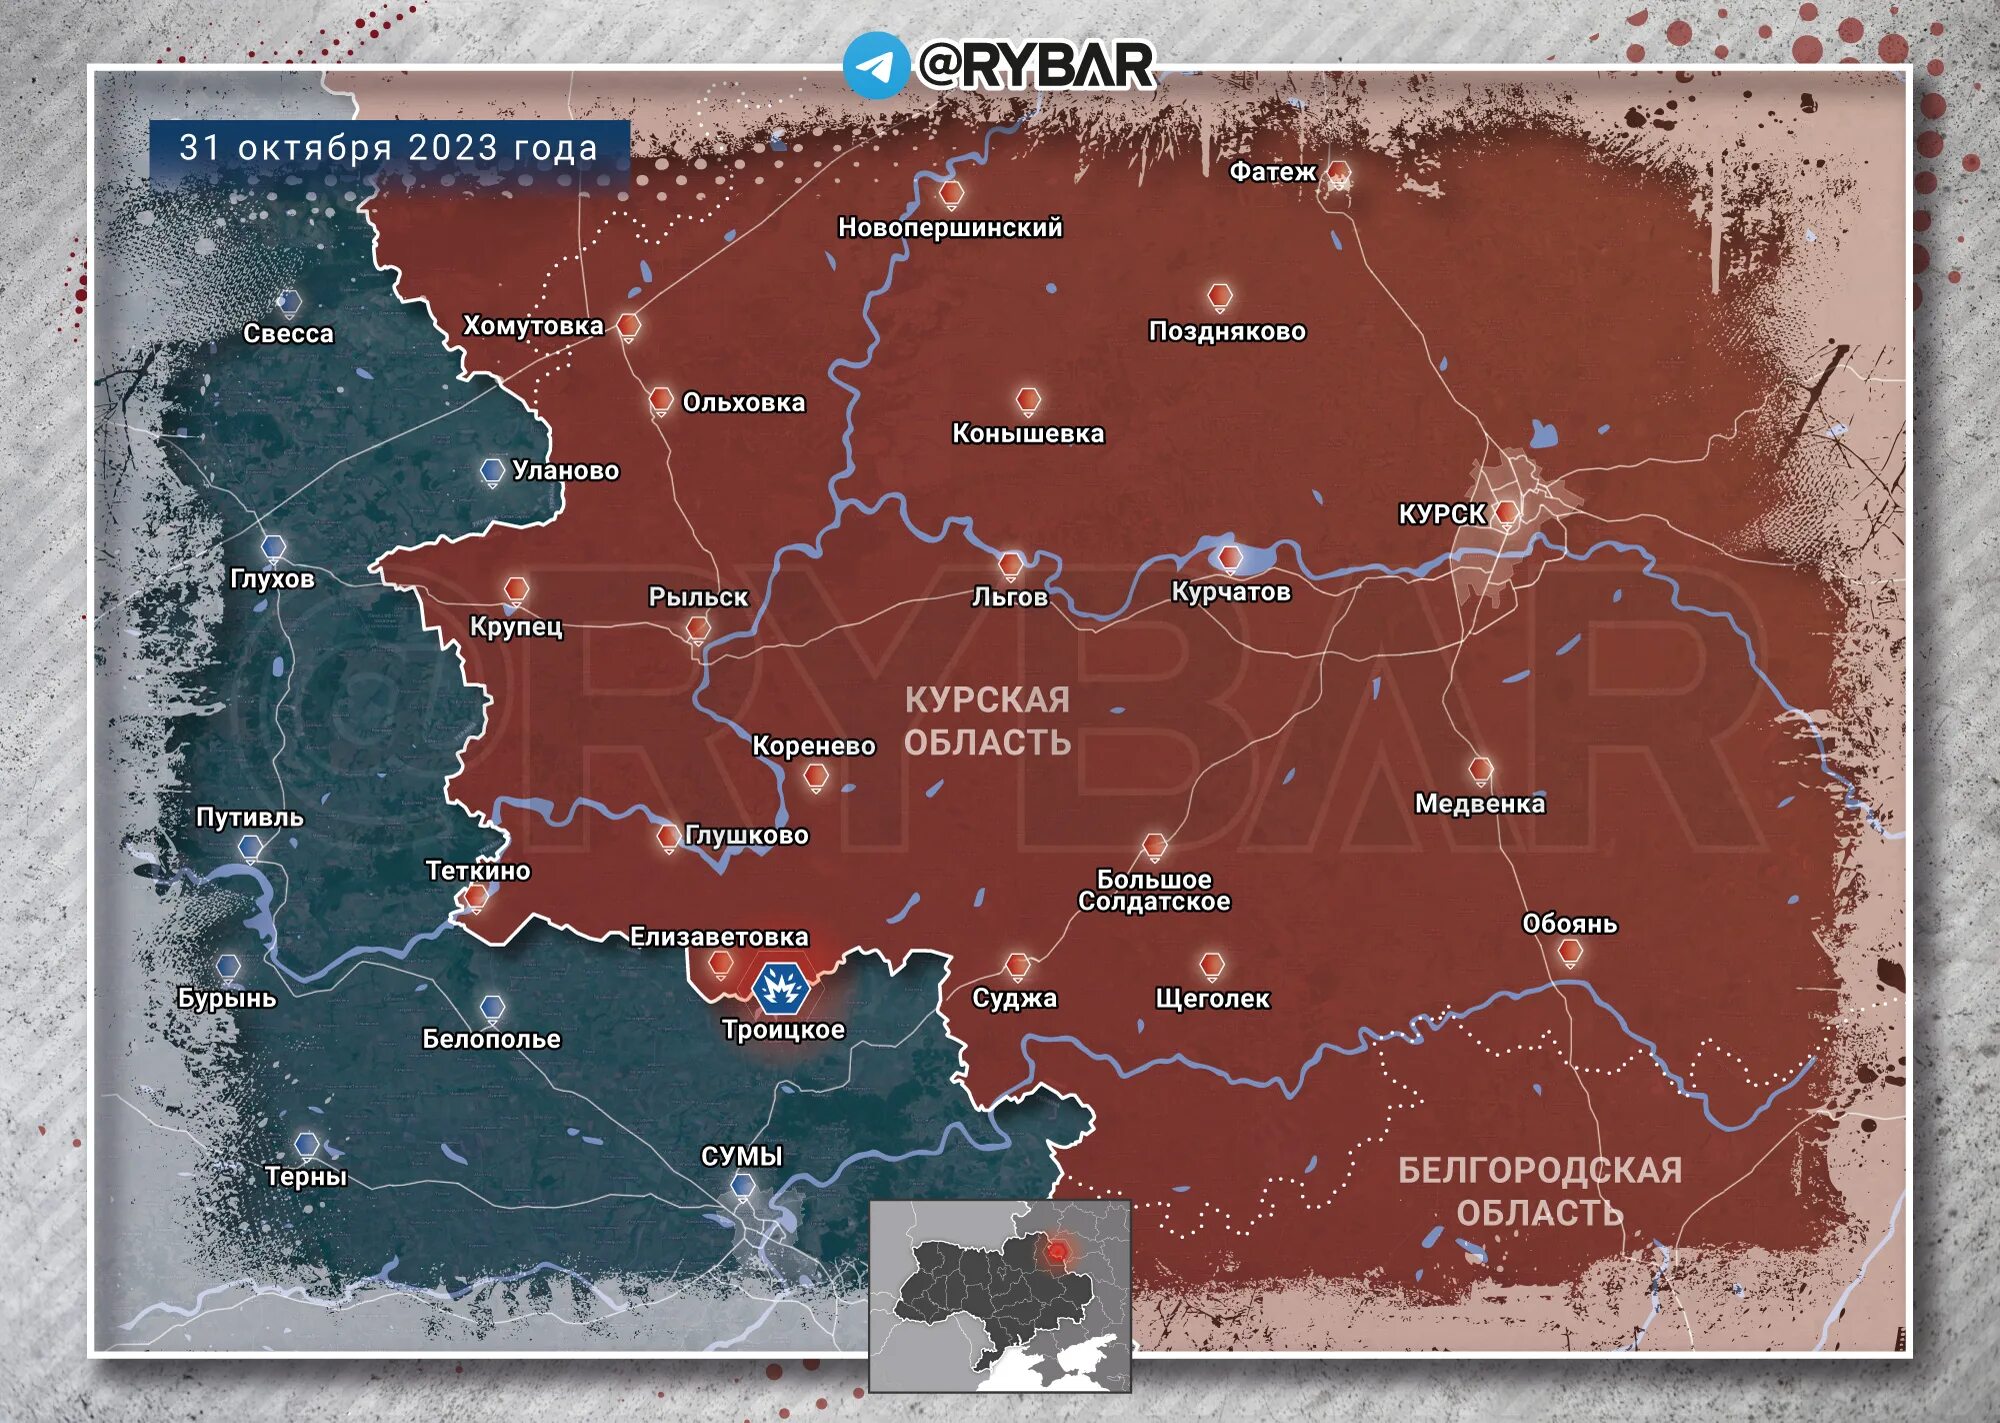 16 08 2023. Карта боевых действий на Украине на 2023 год. Граница России и Украины 2023 года на карте. Карта боевых действий на Украине сейчас 2023 года. Карта боевых действий январь 2023.